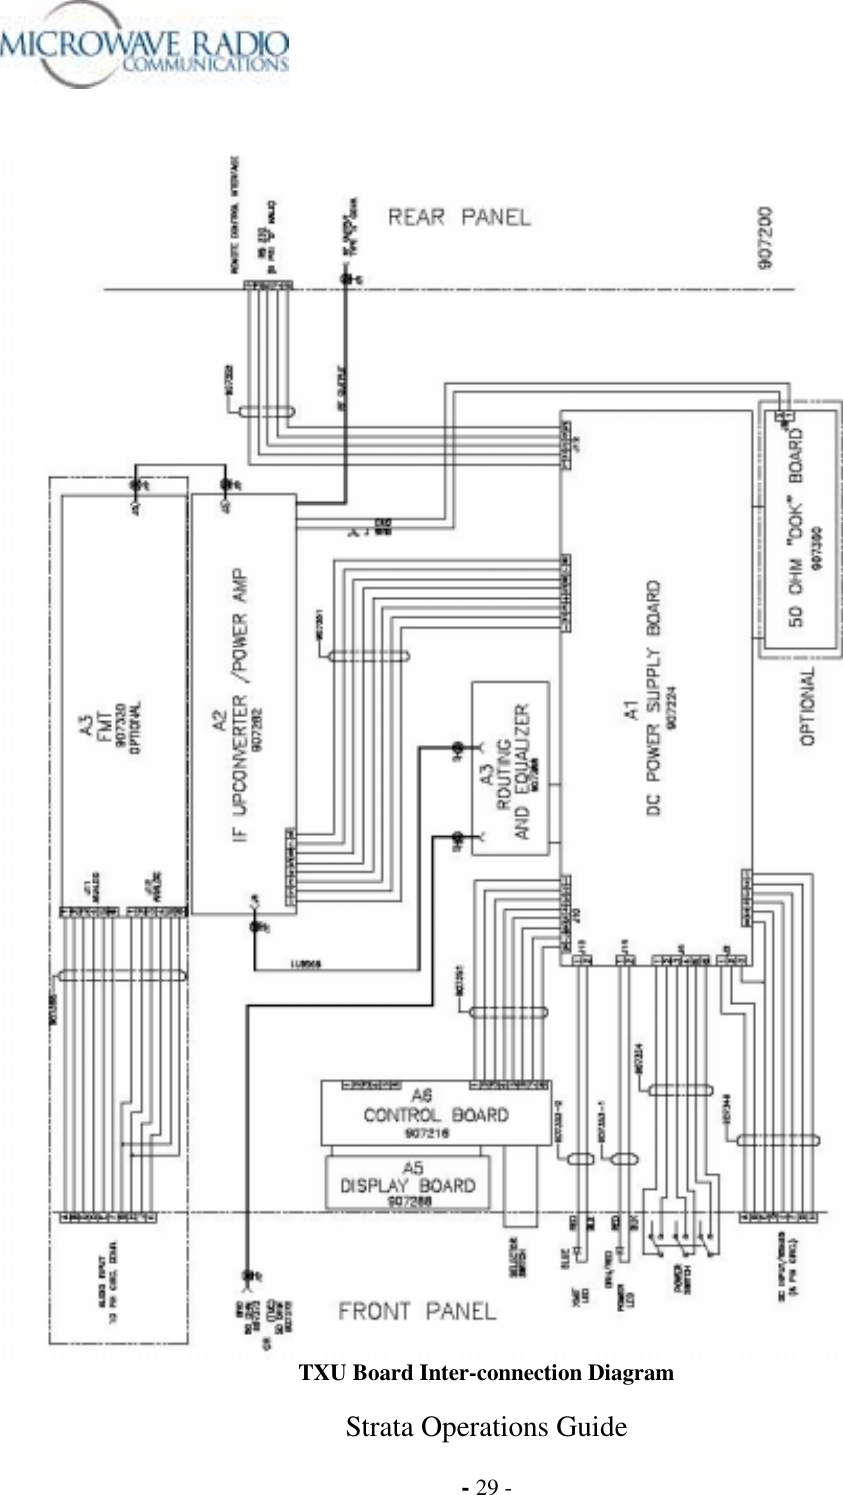  Strata Operations Guide  - 29 -    TXU Board Inter-connection Diagram 